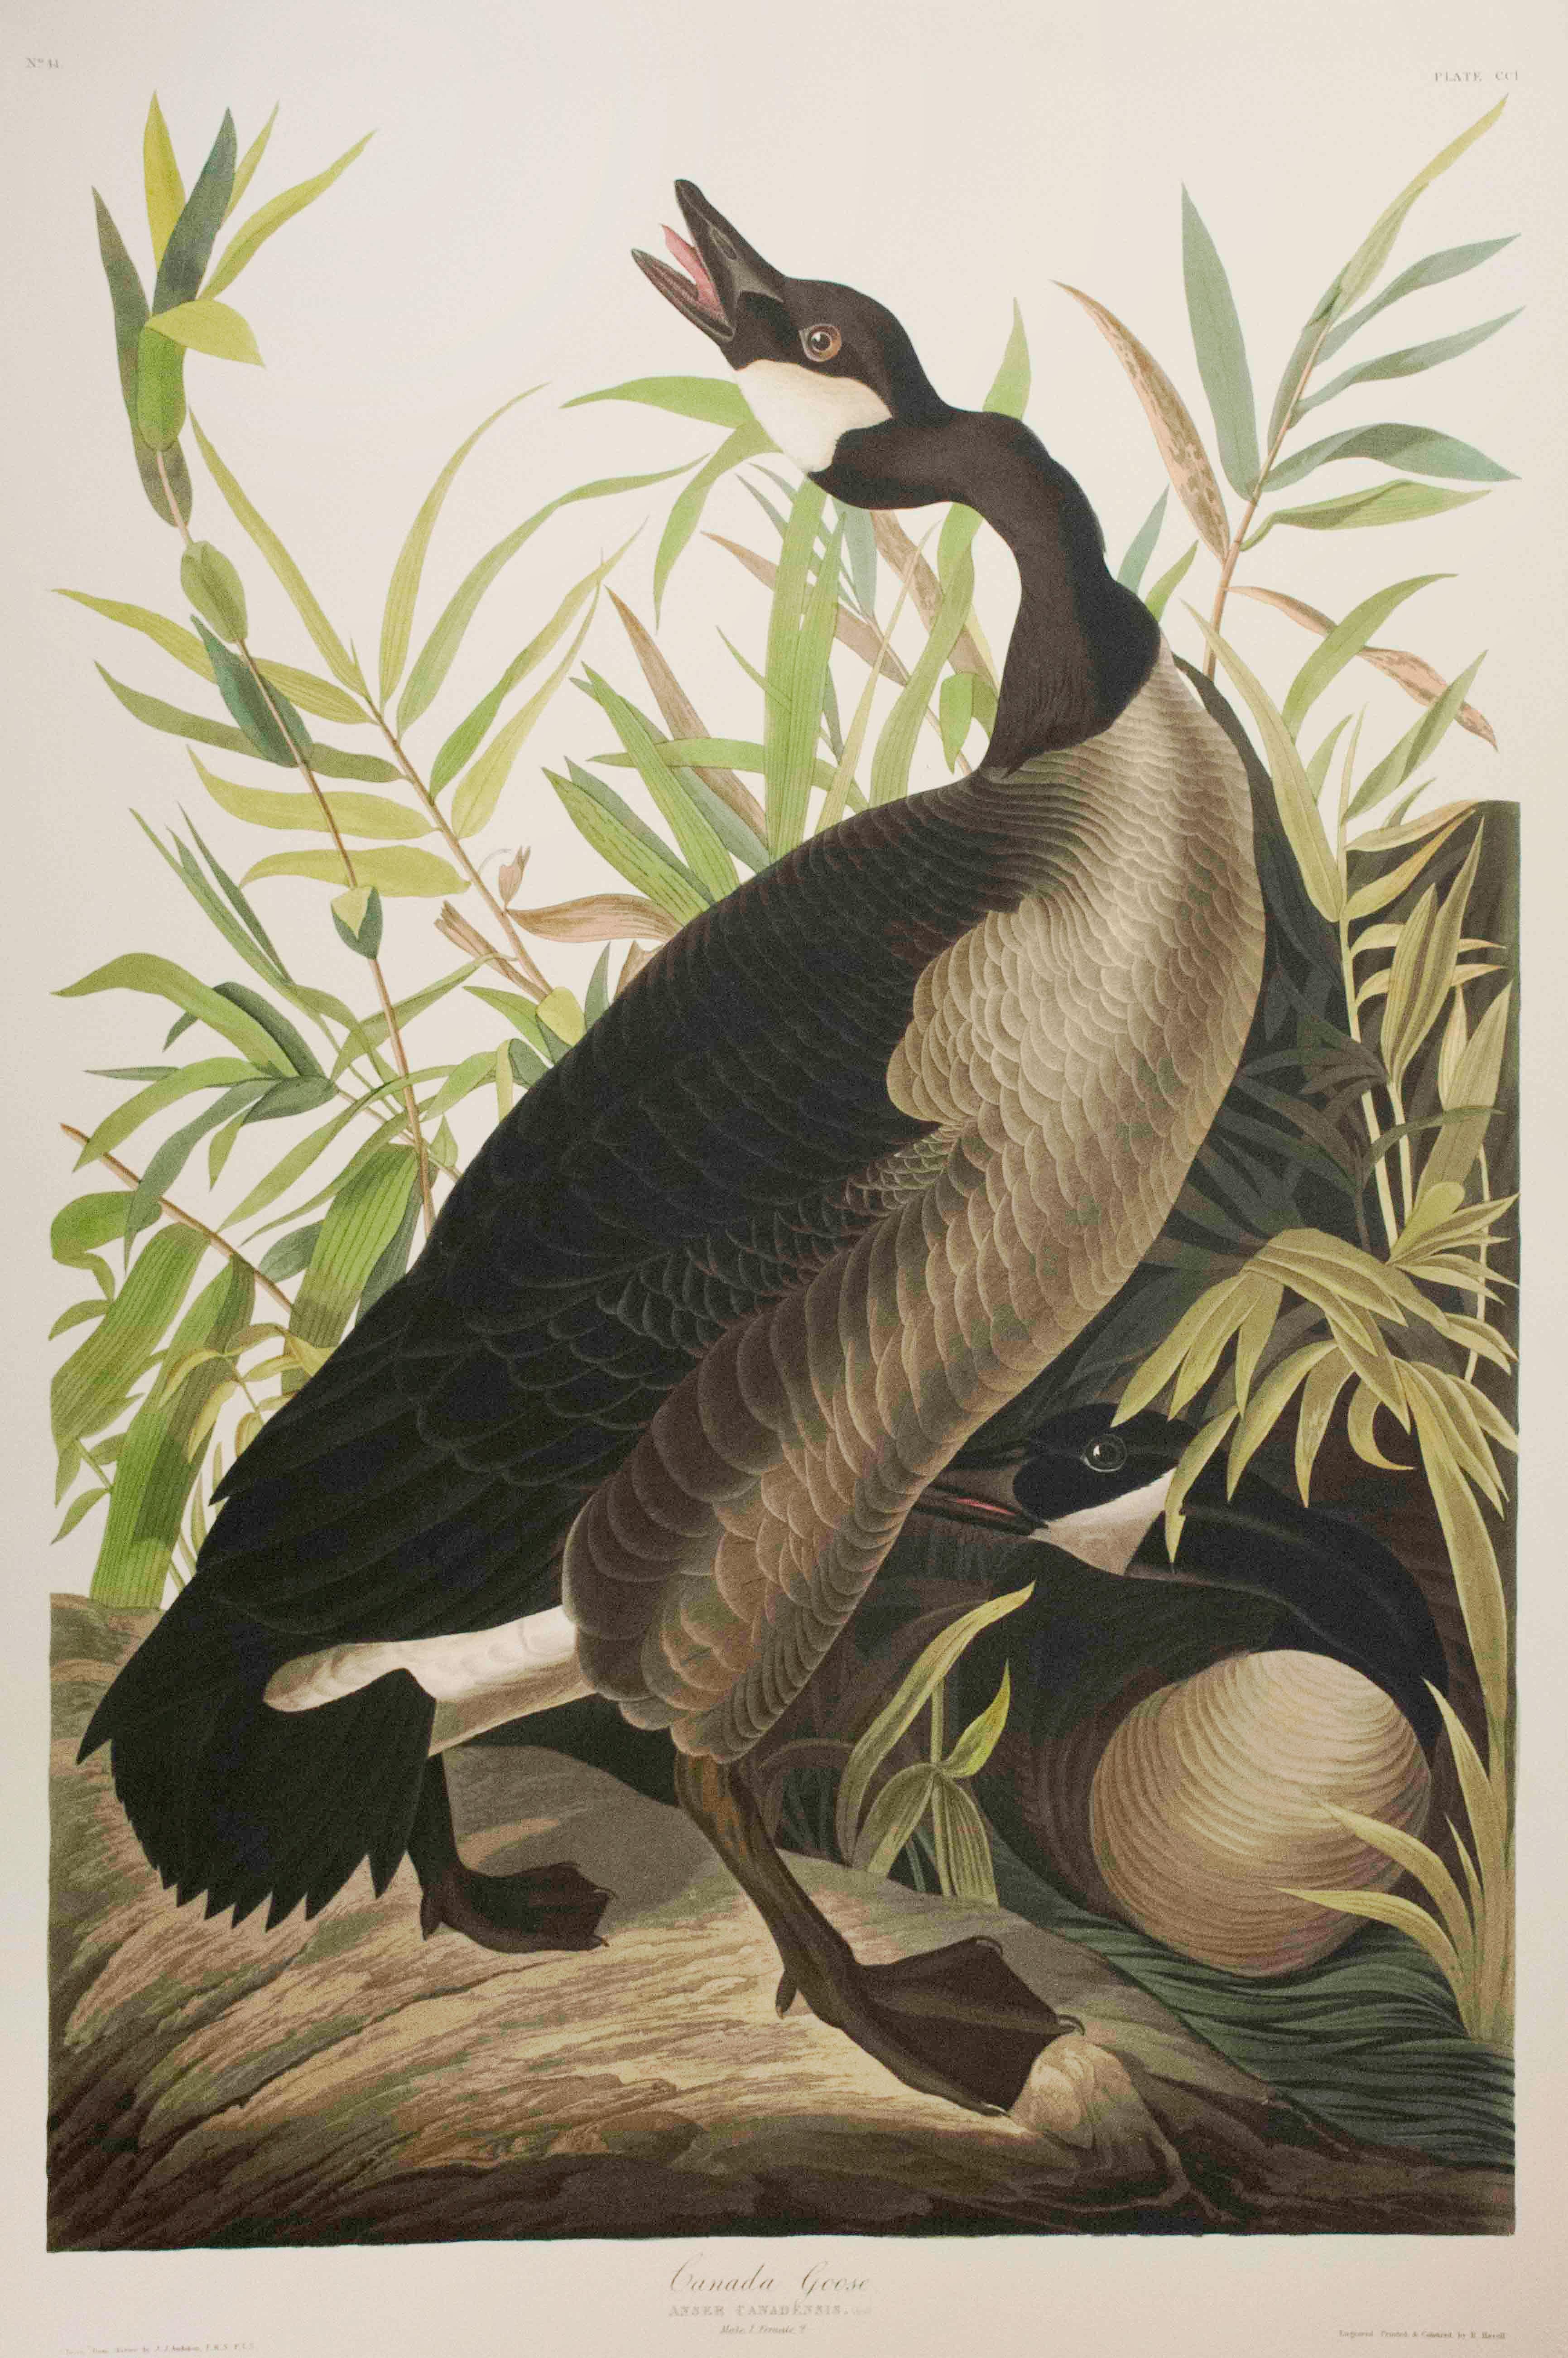 Print After John James Audubon - Canada Goose, Édition Pl. 201